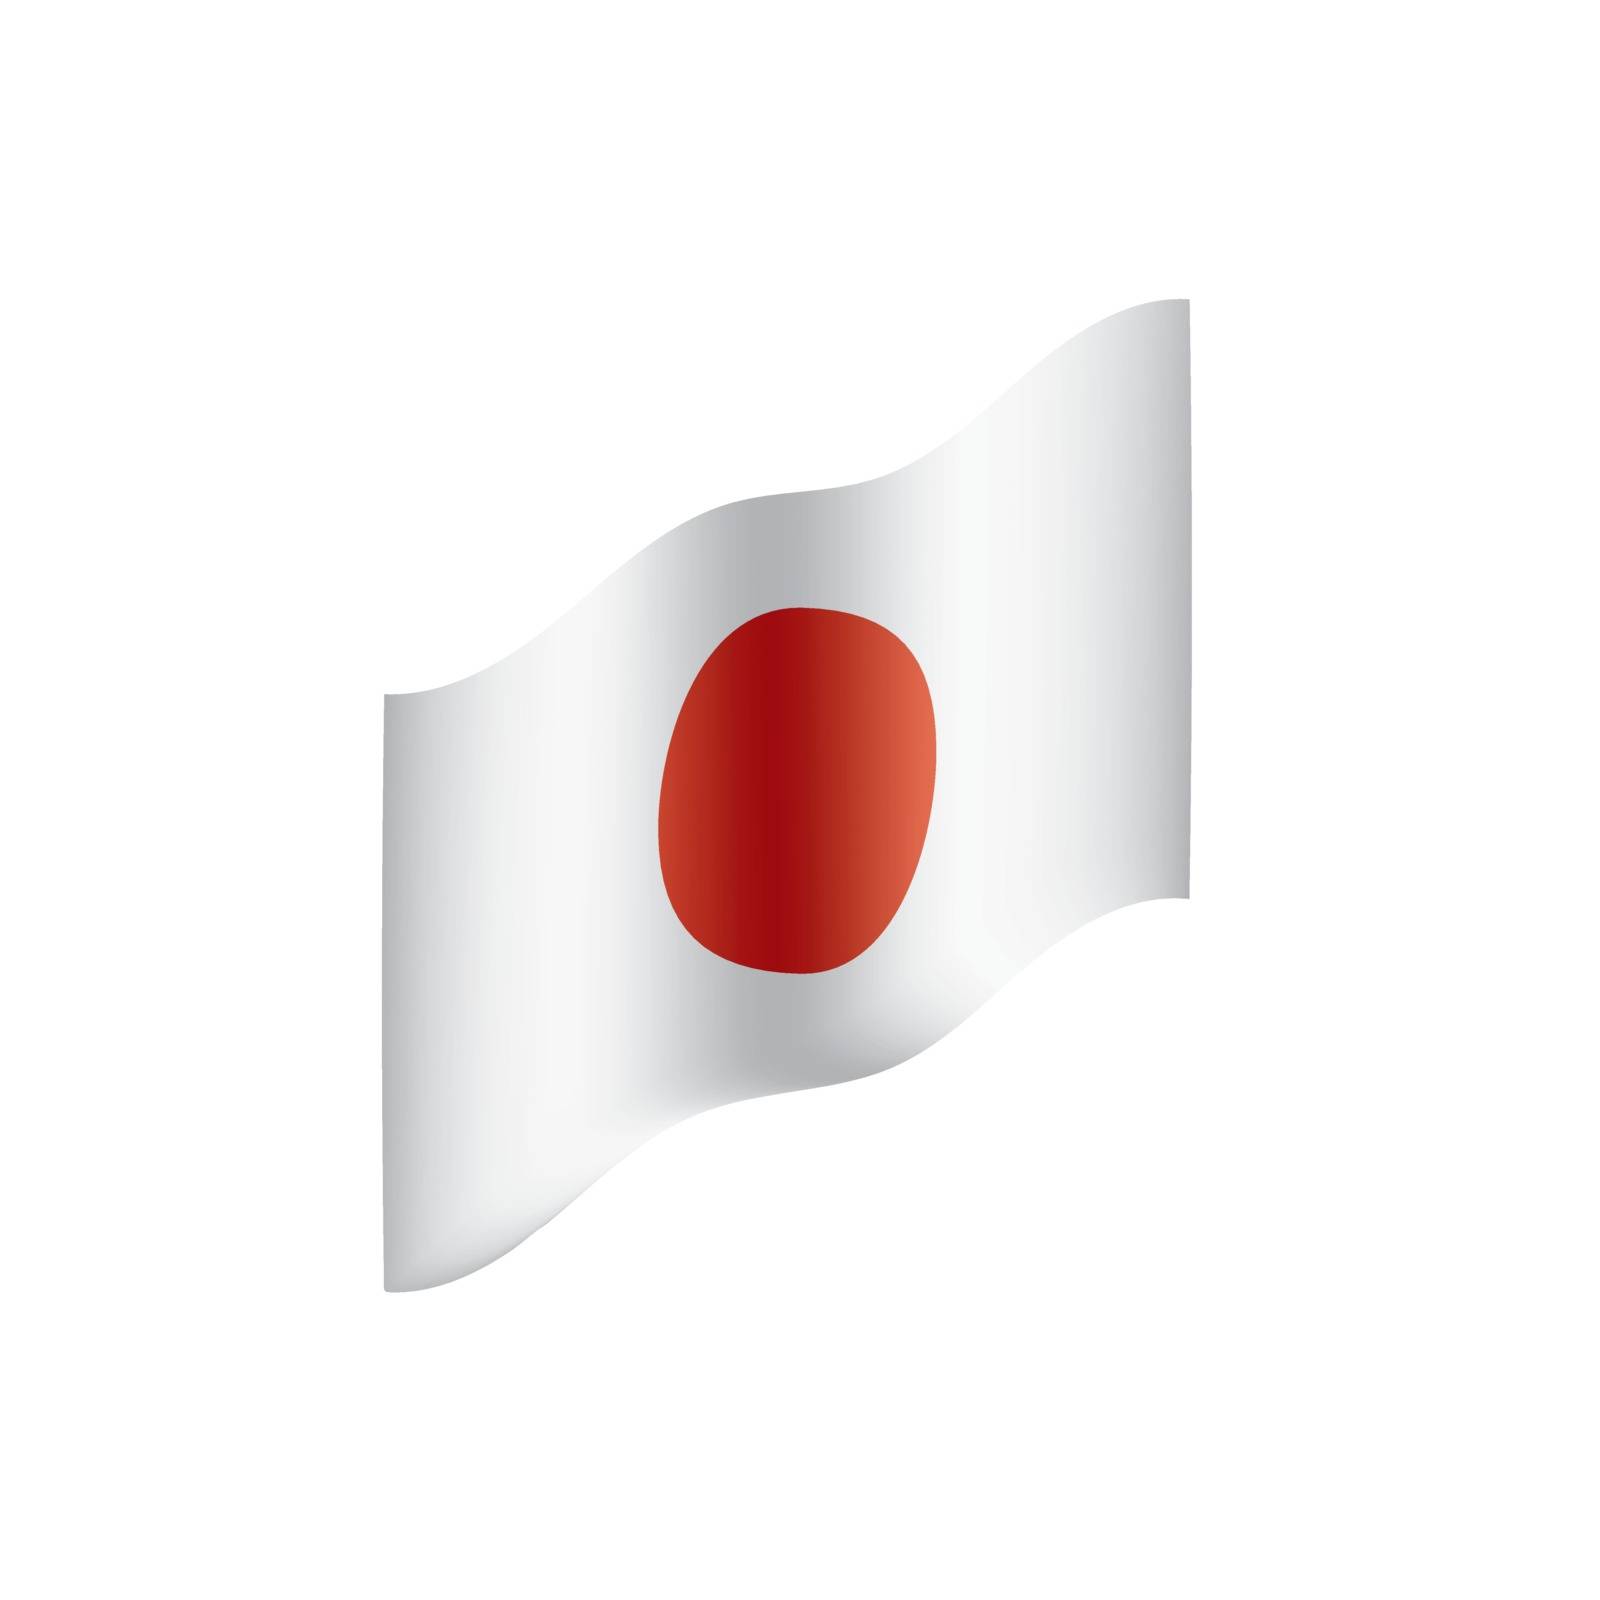 Japan flag, vector illustration by butenkow